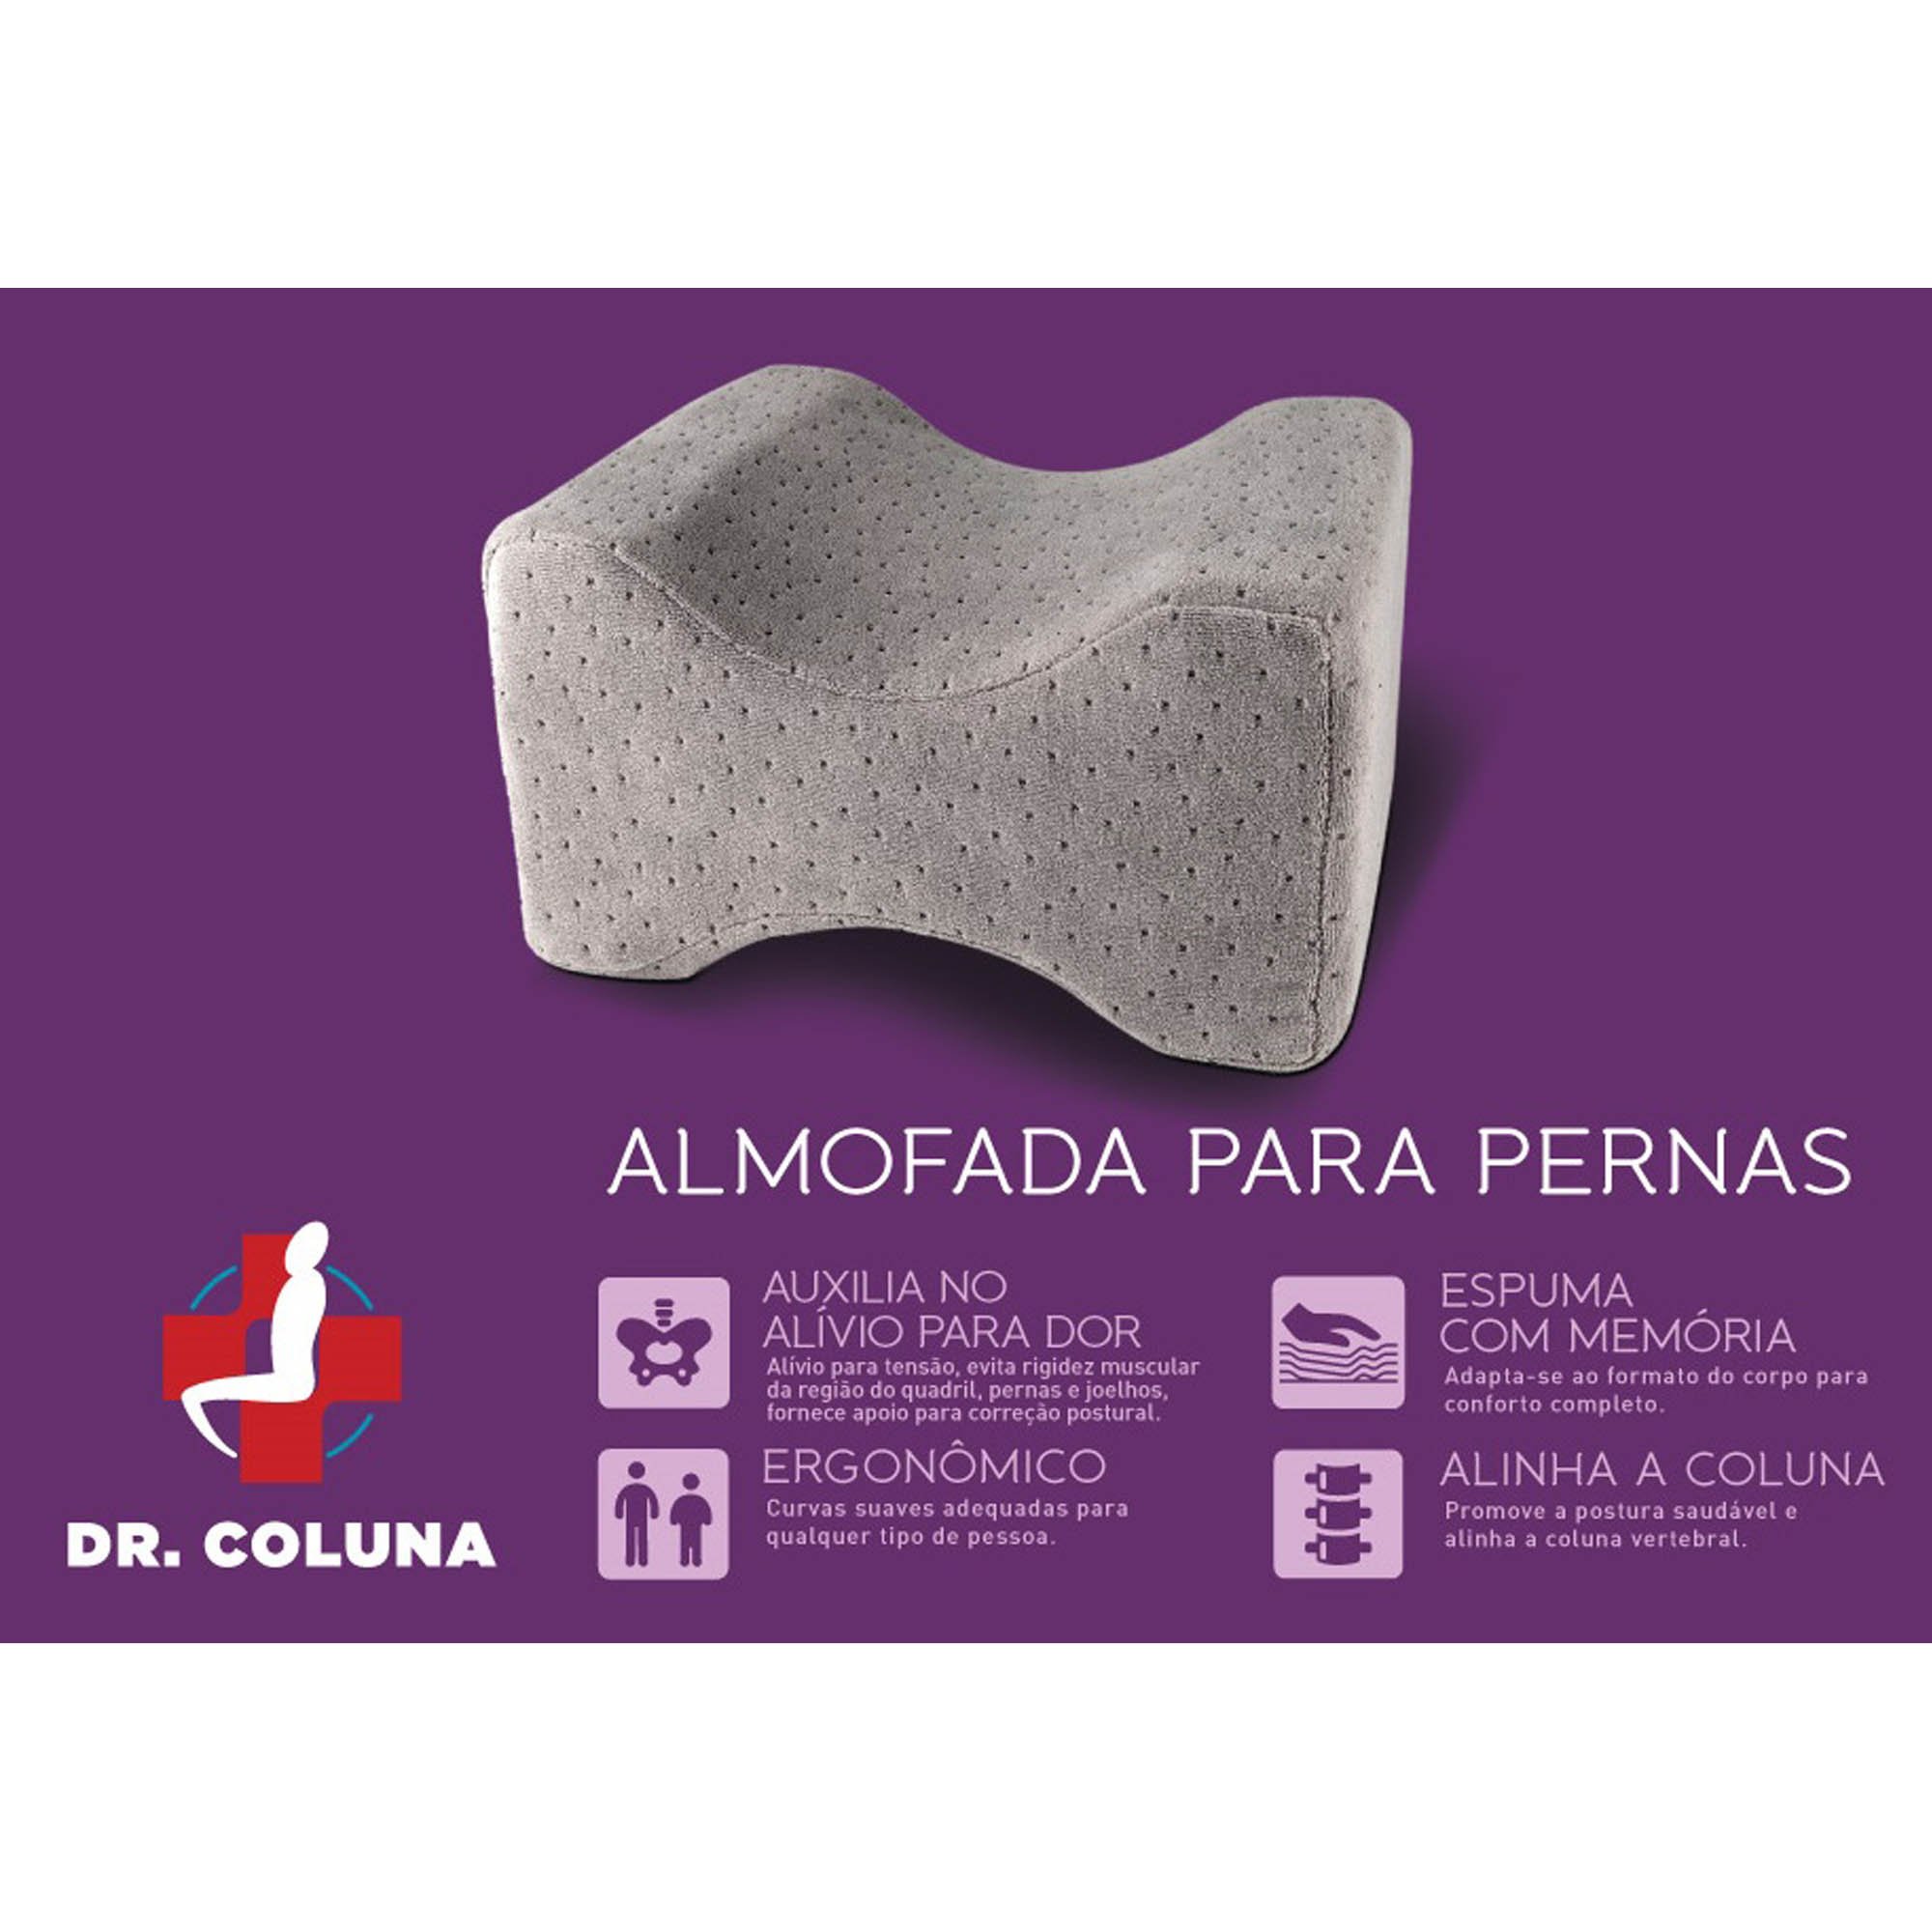 Almofada Viscoelástica Apoio de Pernas Dr. Coluna, Relaxmedic - 3